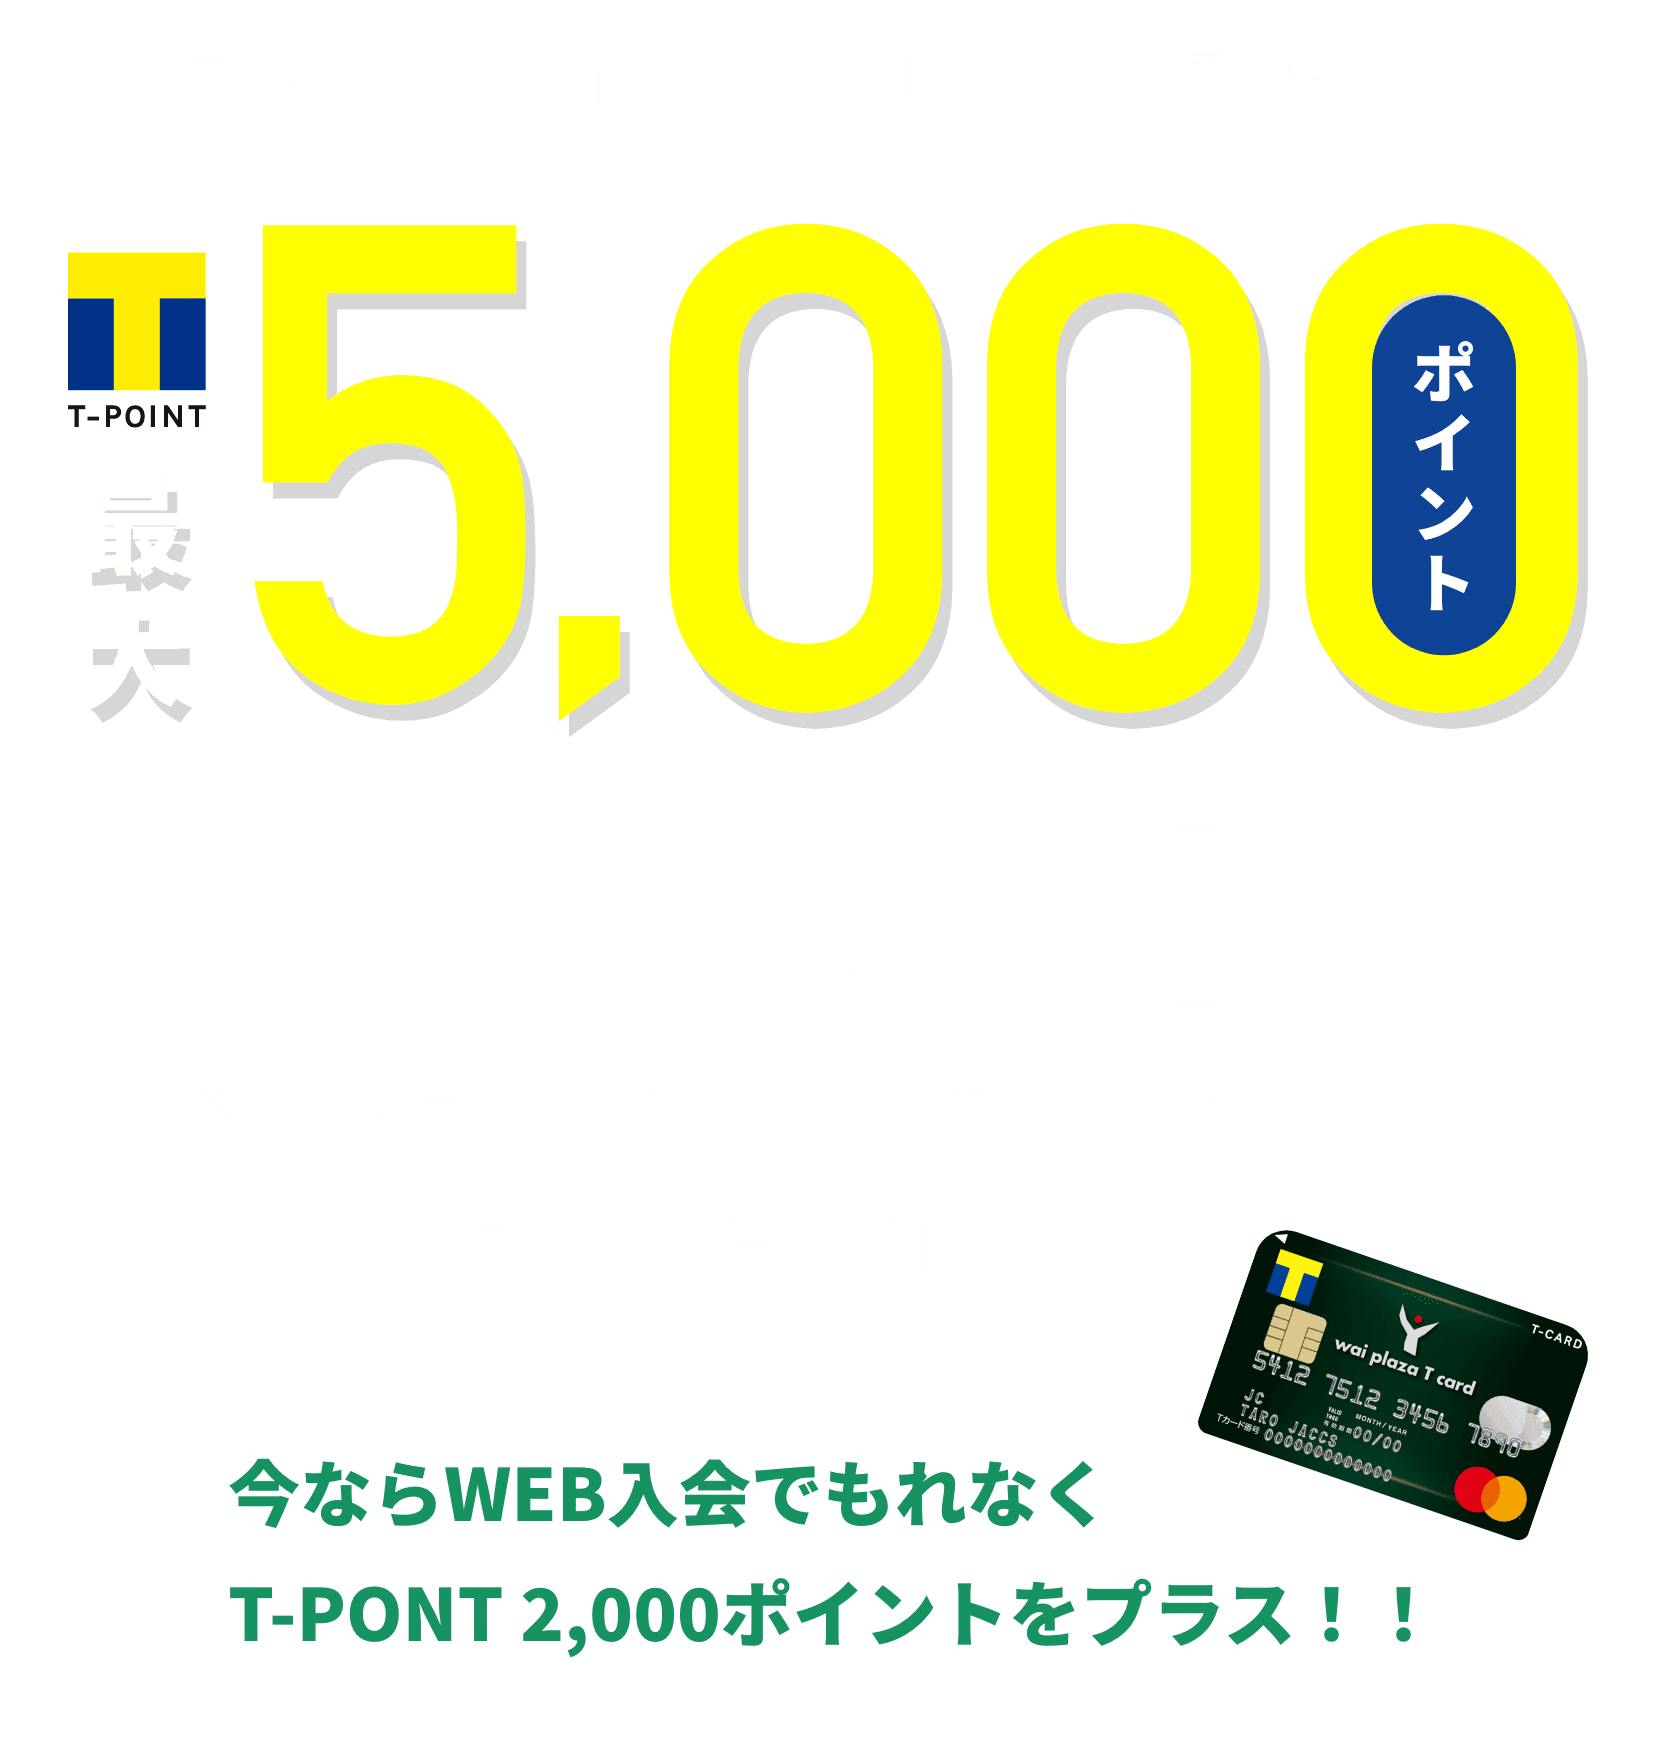 初回ワイプラザTカードご利用した金額に応じて※1T-POINT最大5,000ポイントプレゼント※1.ご利用条件によりもらえるポイントが変わります